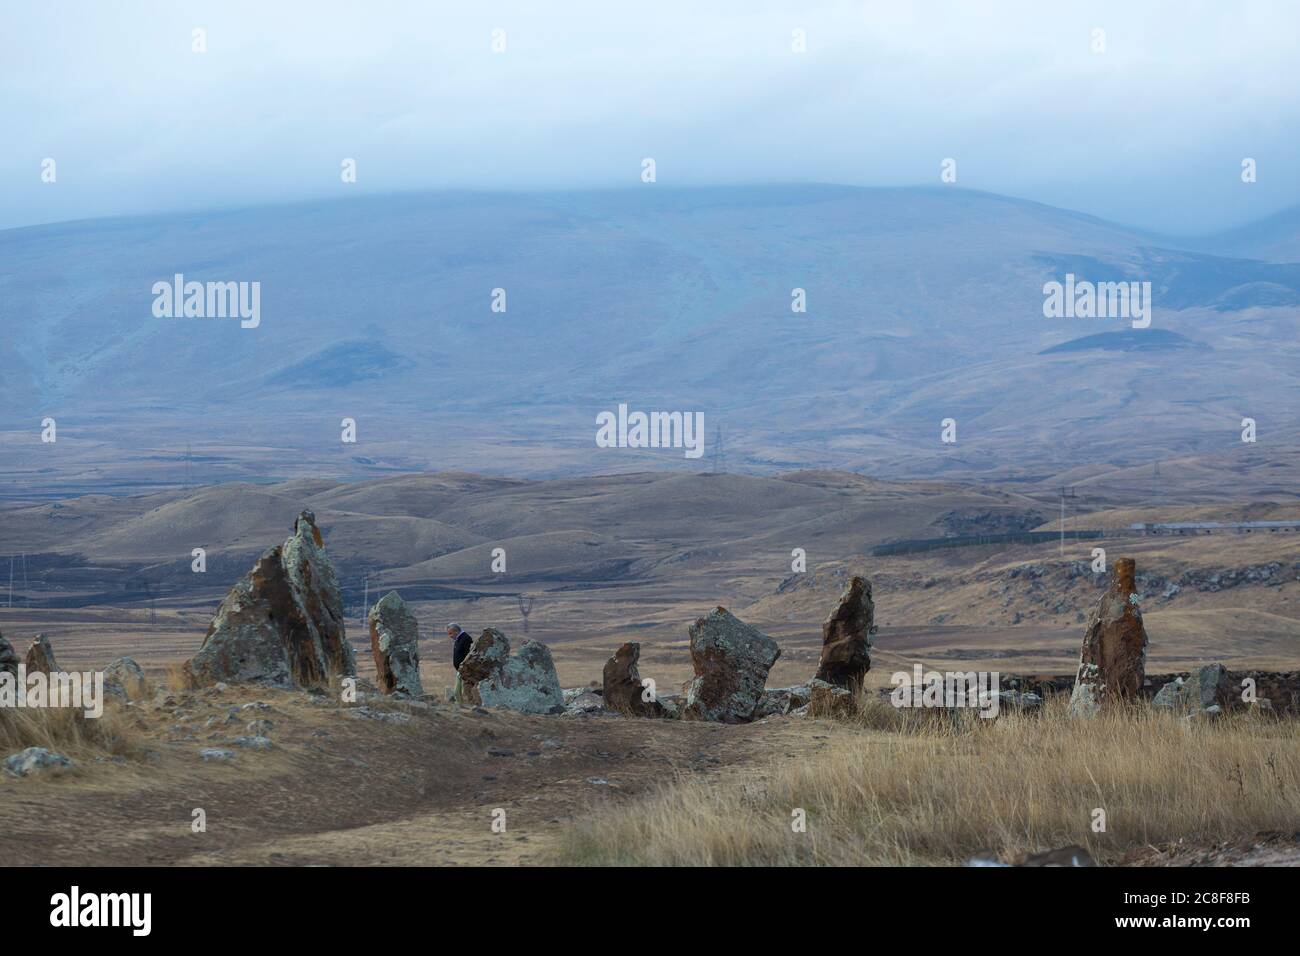 Carahunge, situata su una suggestiva pianura, è un sito archeologico preistorico nei pressi della città di Siian, nella provincia di Syunik in Armenia. Foto Stock